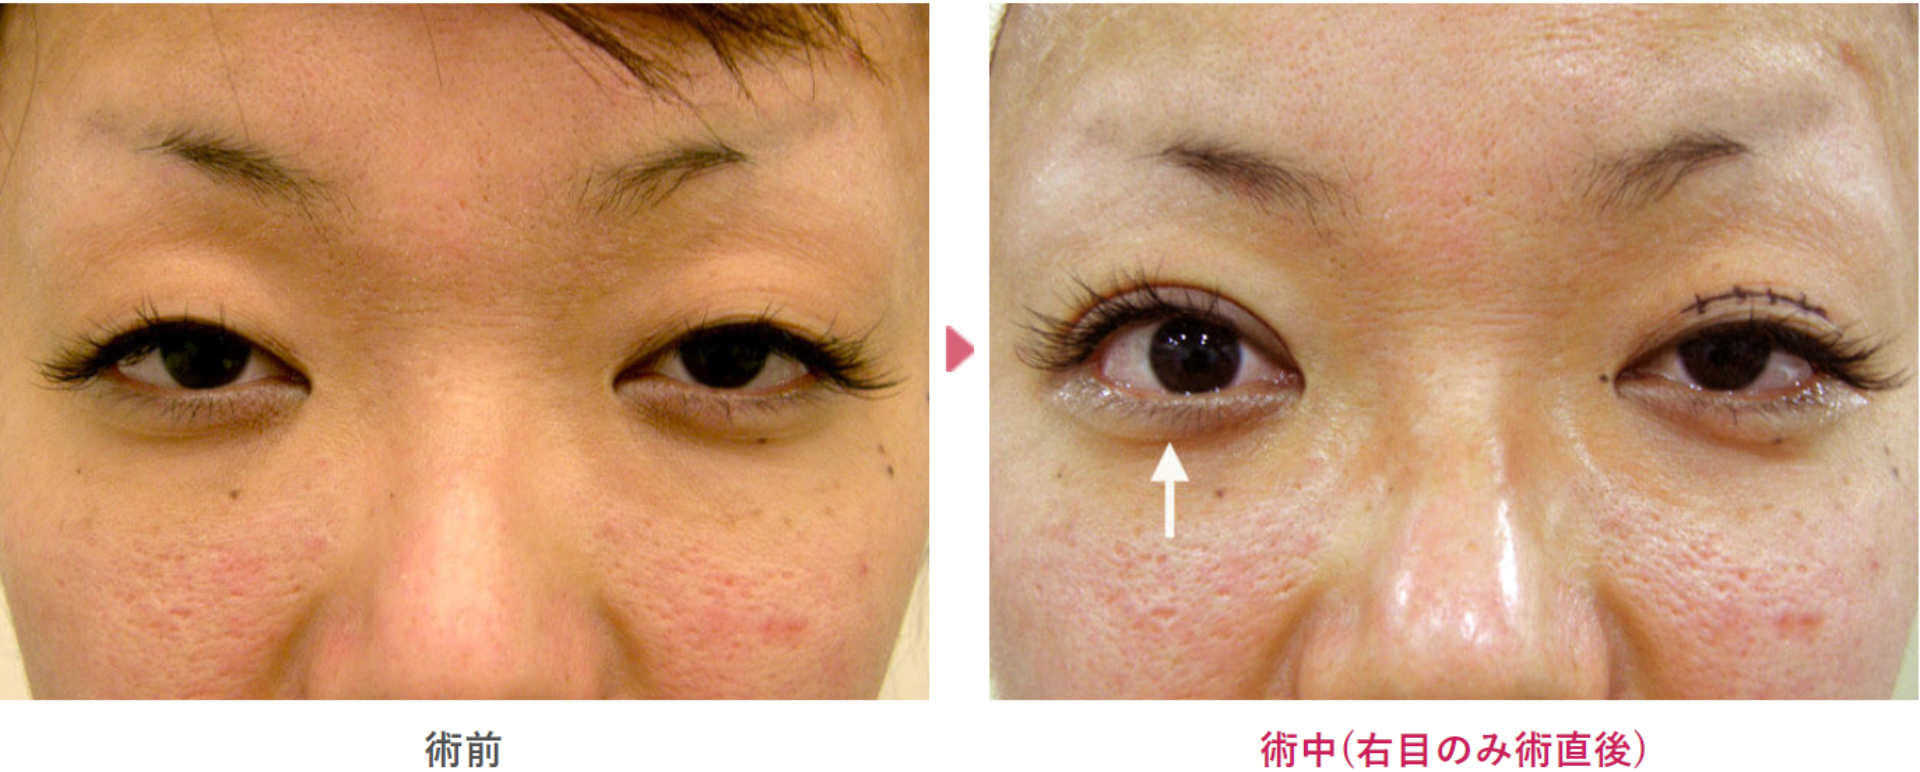 二重と眼瞼下垂治療を受け術前と術中の見た目の変化を表す症例写真